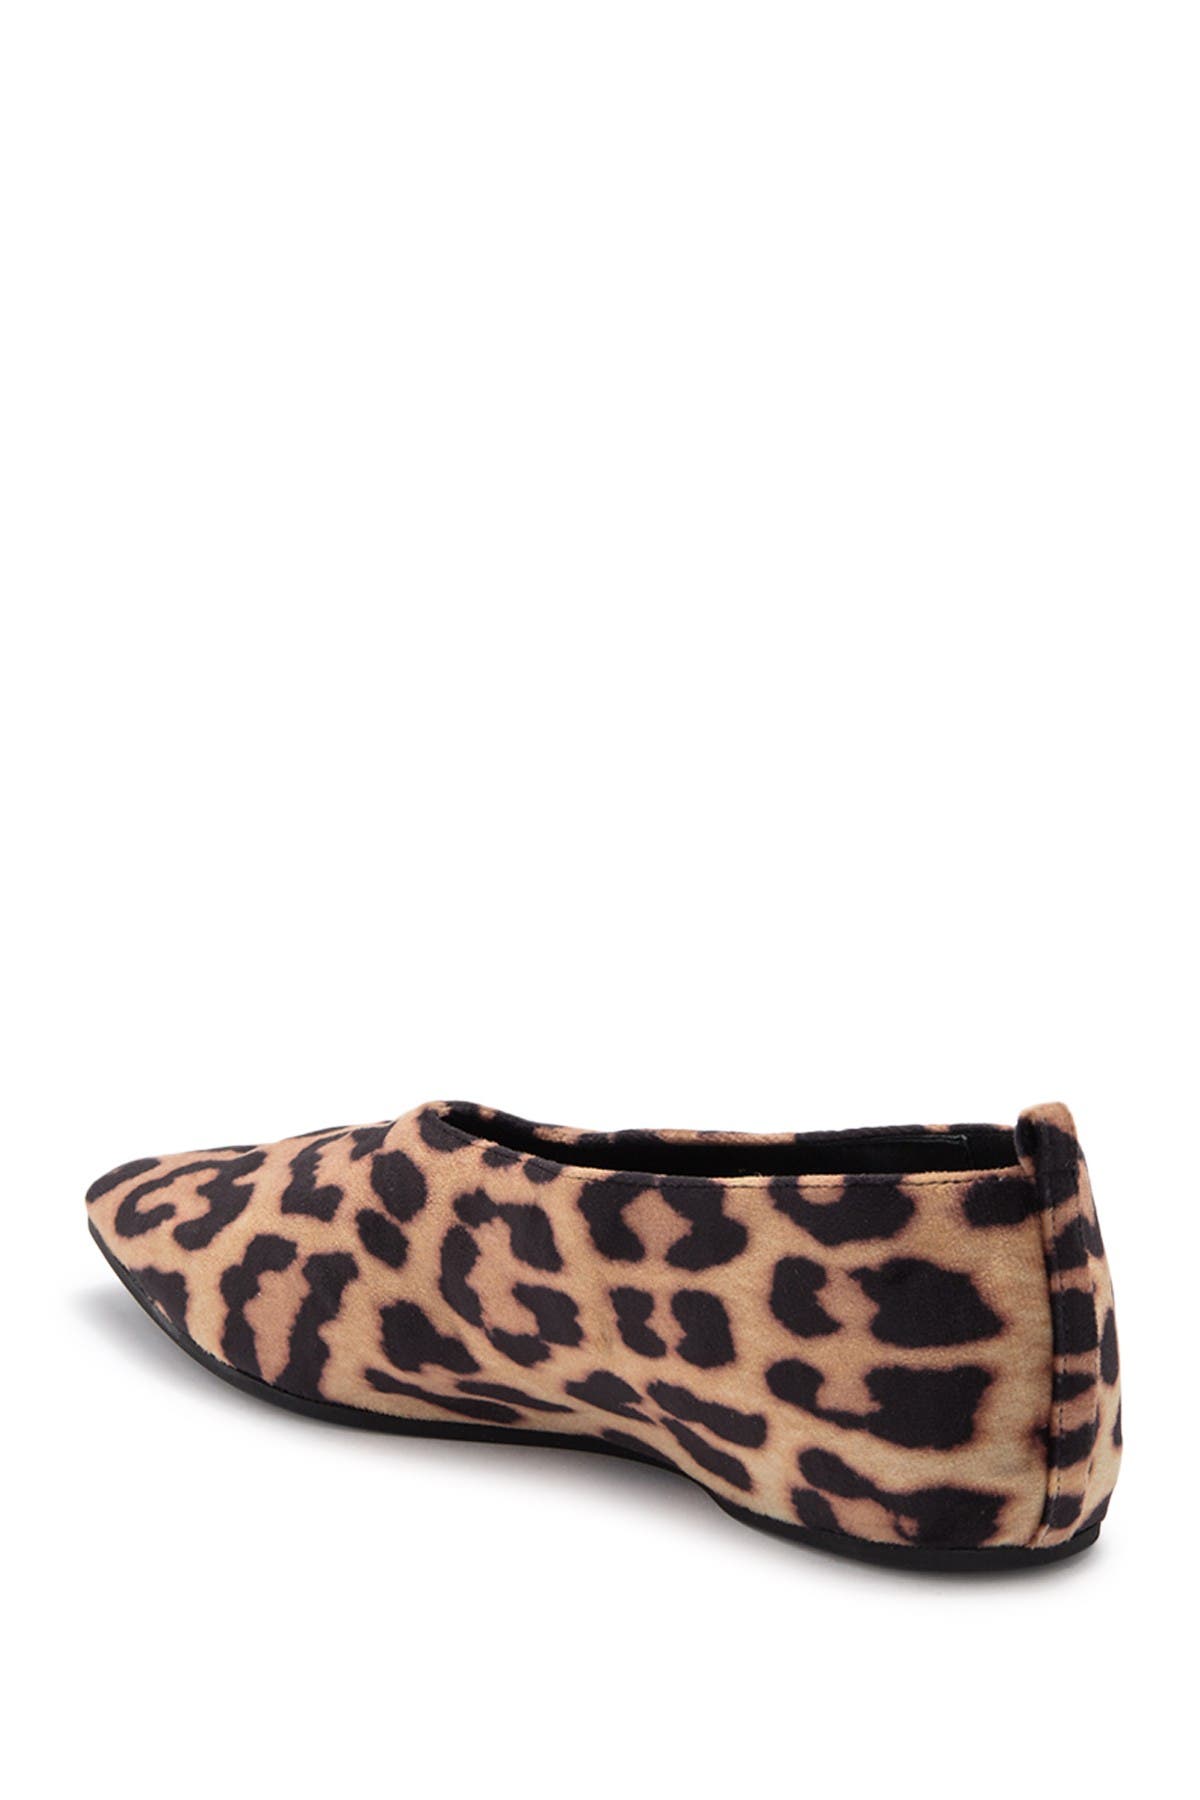 Stella Mccartney Leopard Pointed Toe Flat In Black